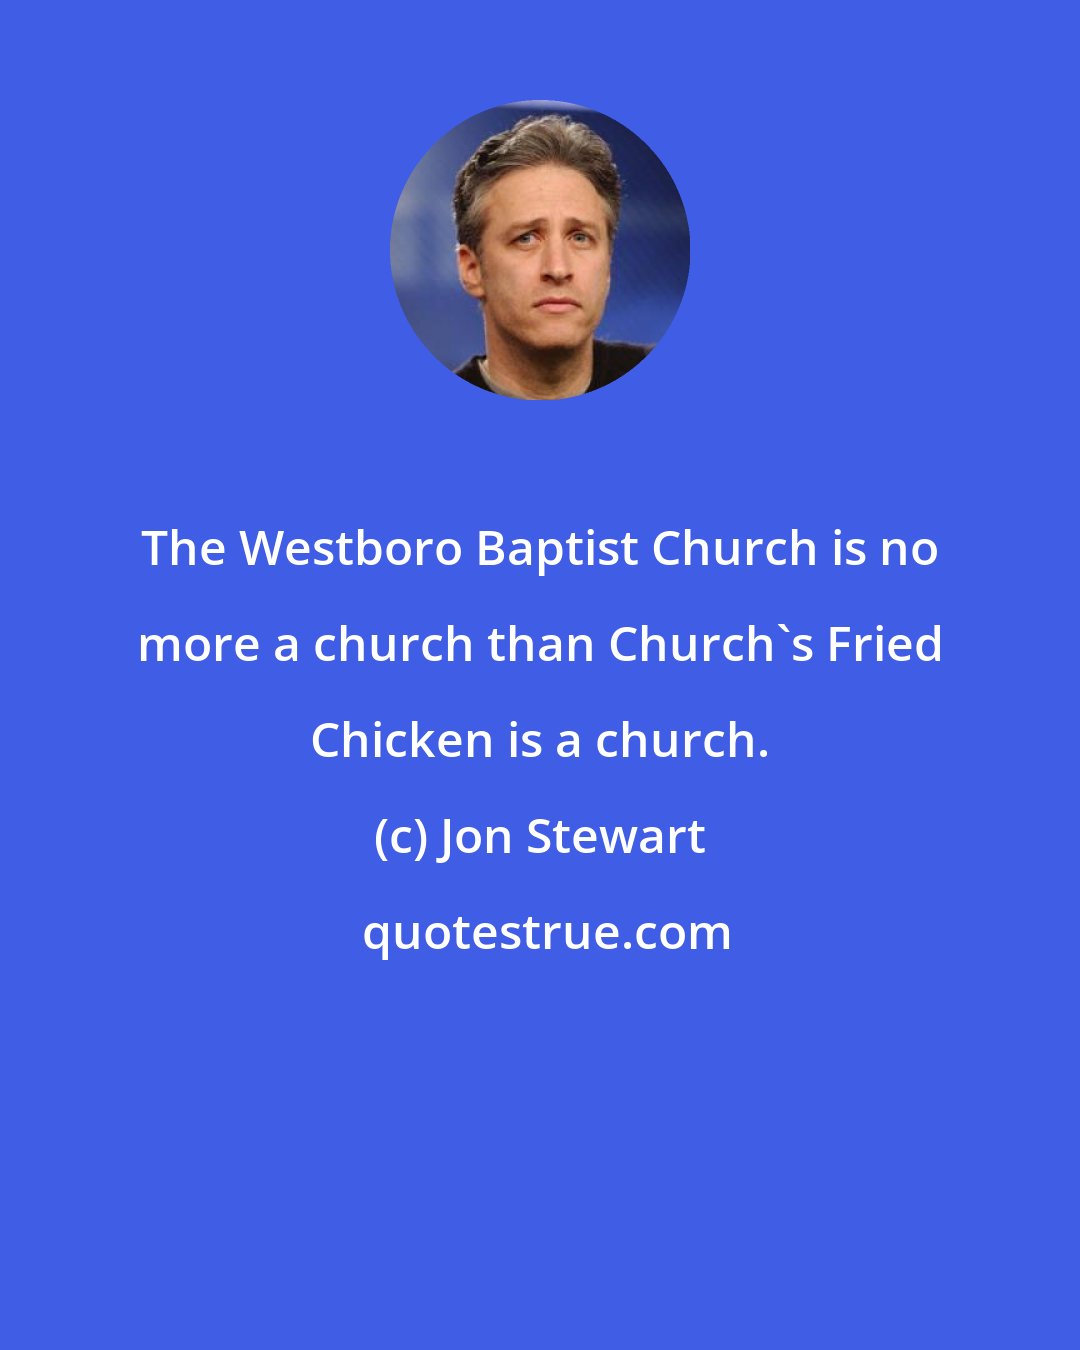 Jon Stewart: The Westboro Baptist Church is no more a church than Church's Fried Chicken is a church.